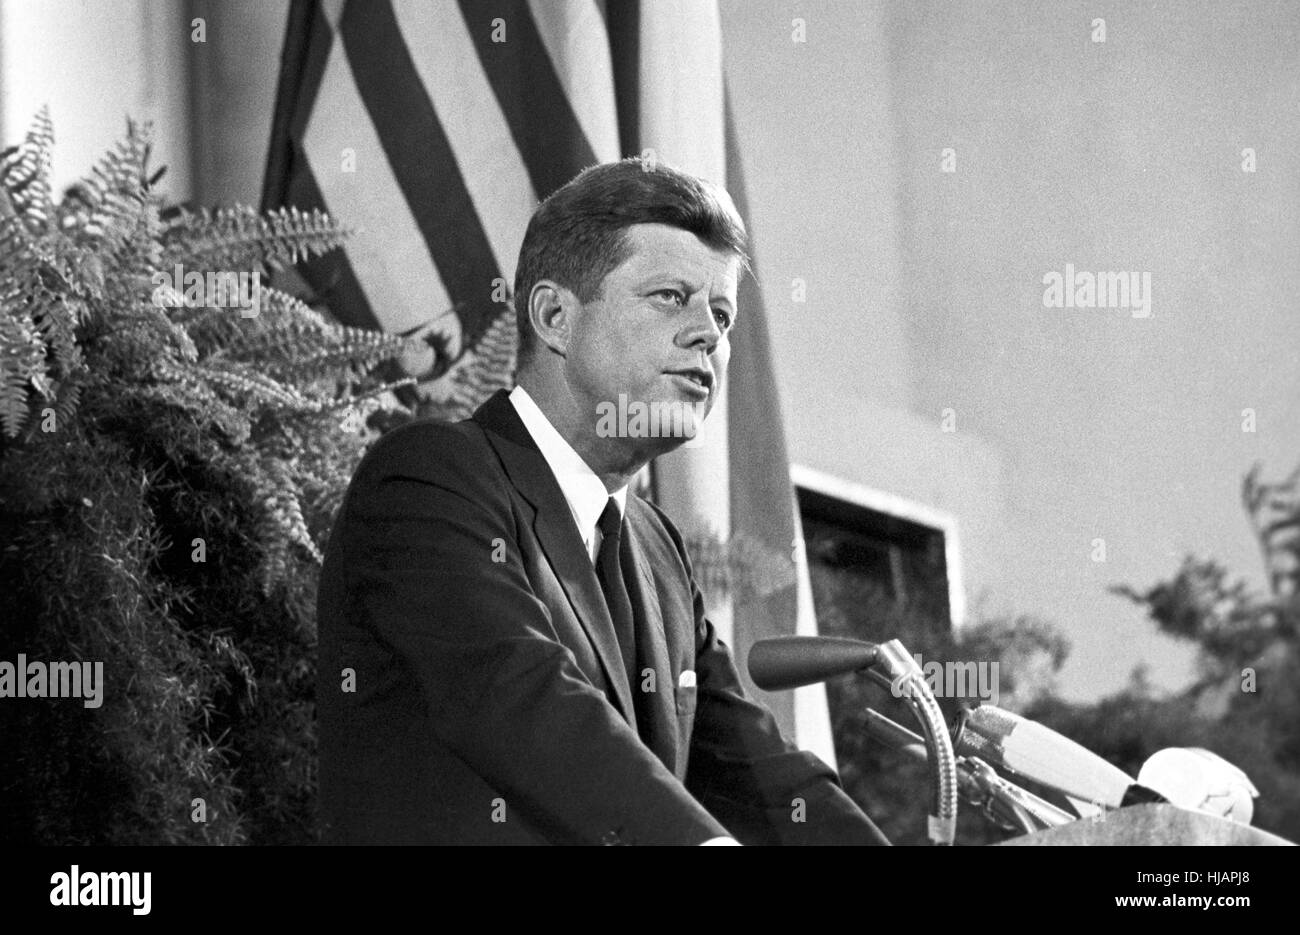 Président américain John F. Kennedy lors de sa visite dans la région de Frankfurt am Main le 25 juin 1963 lors de la Paulskirche historique. Banque D'Images